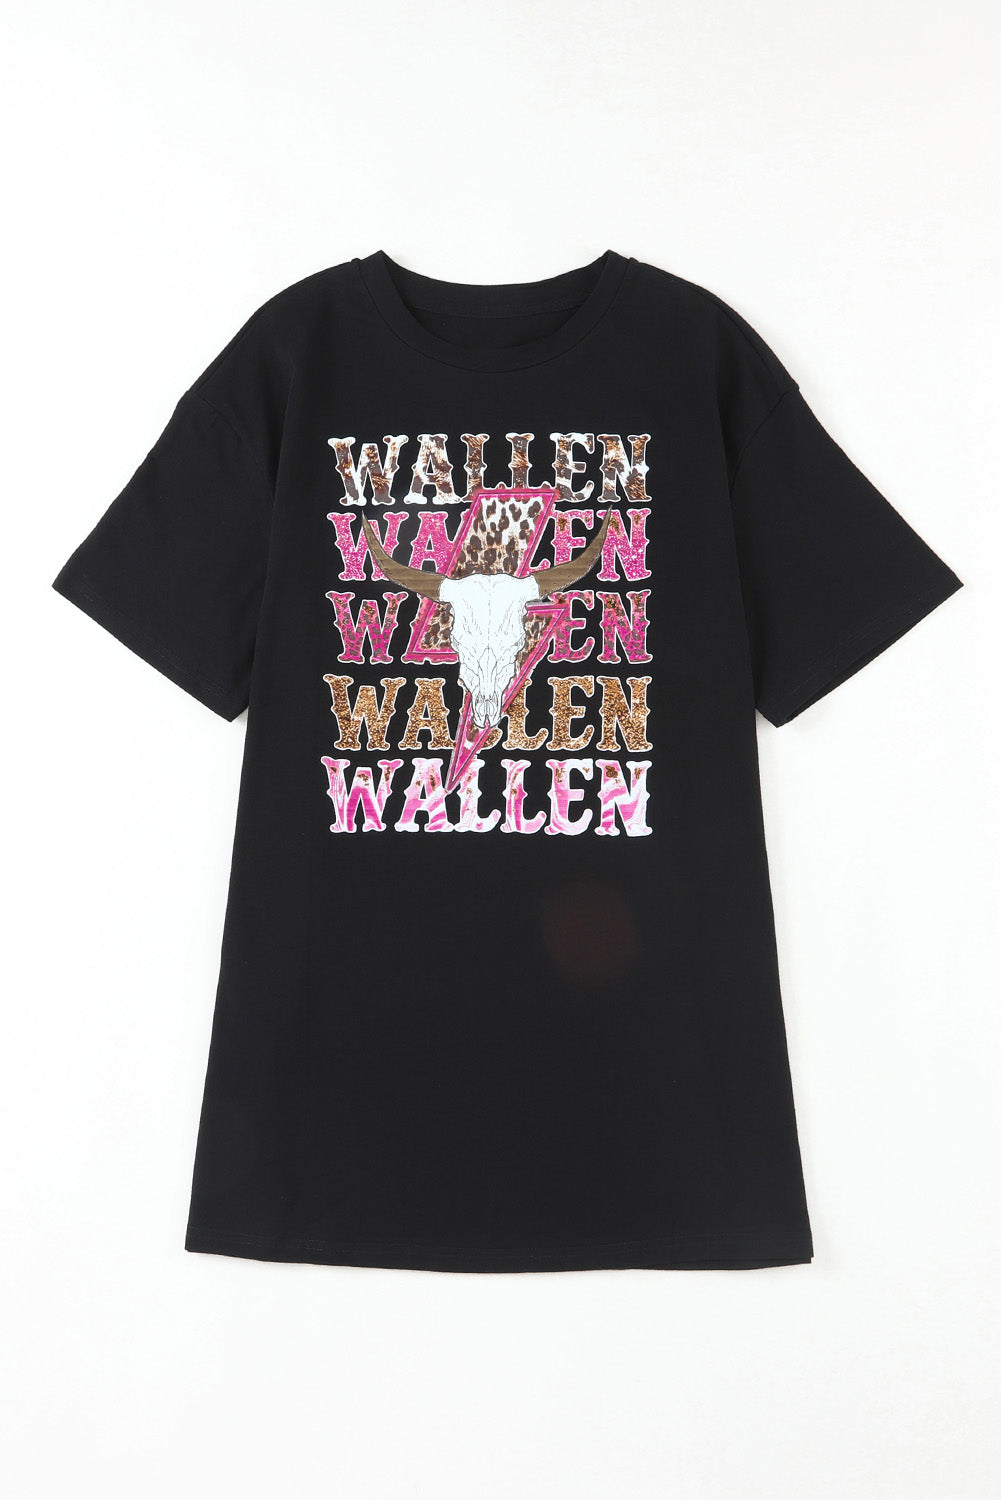 Black WALLEN Cowskull Graphic Oversized Tee